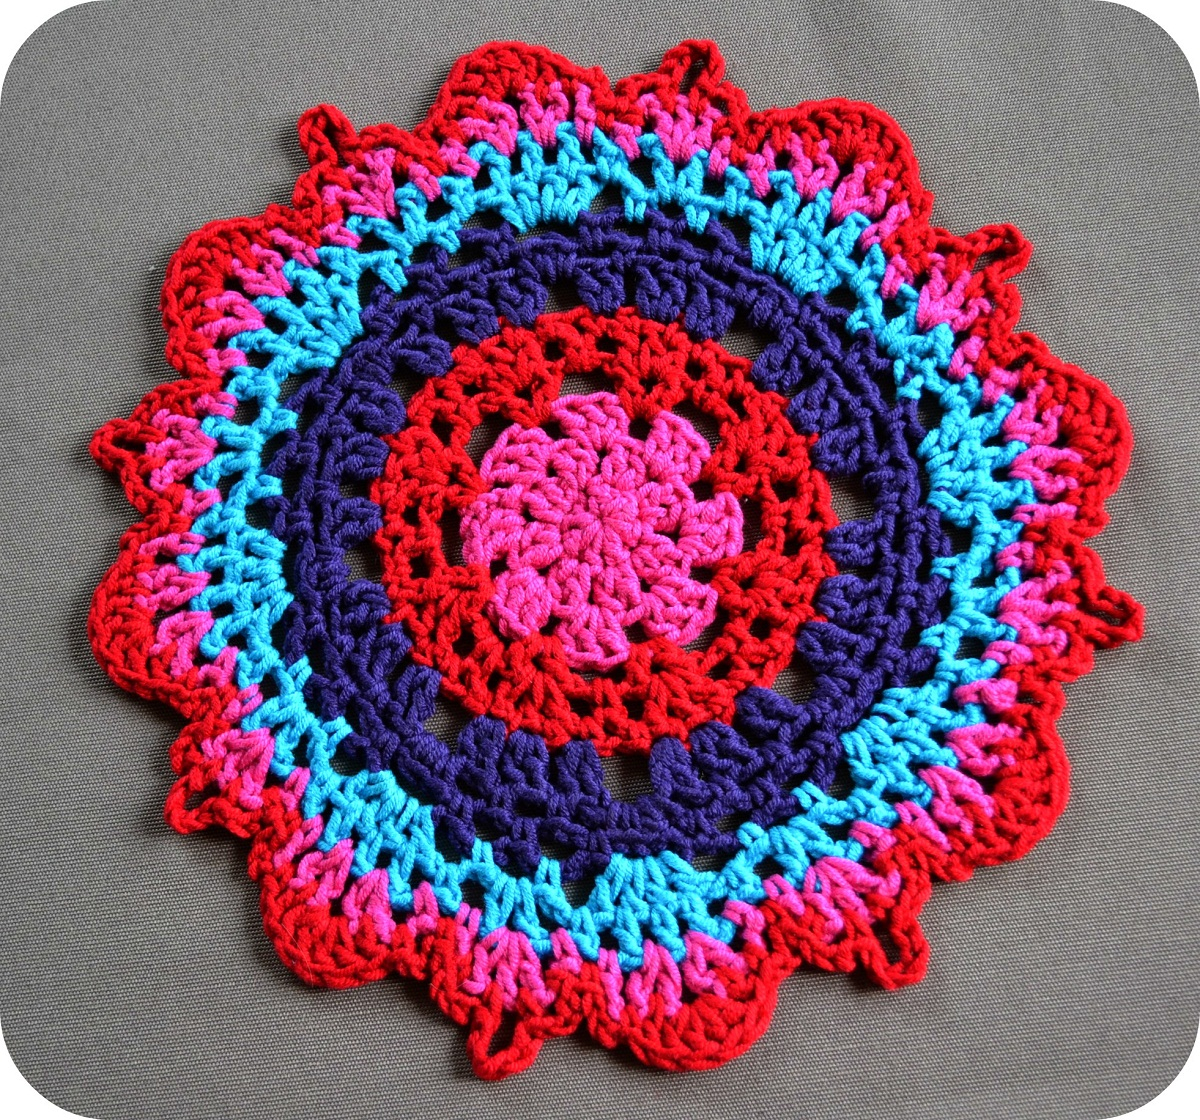 Easy Crochet Doily Patterns For Beginners 15 Crochet Doily Patterns Guide Patterns